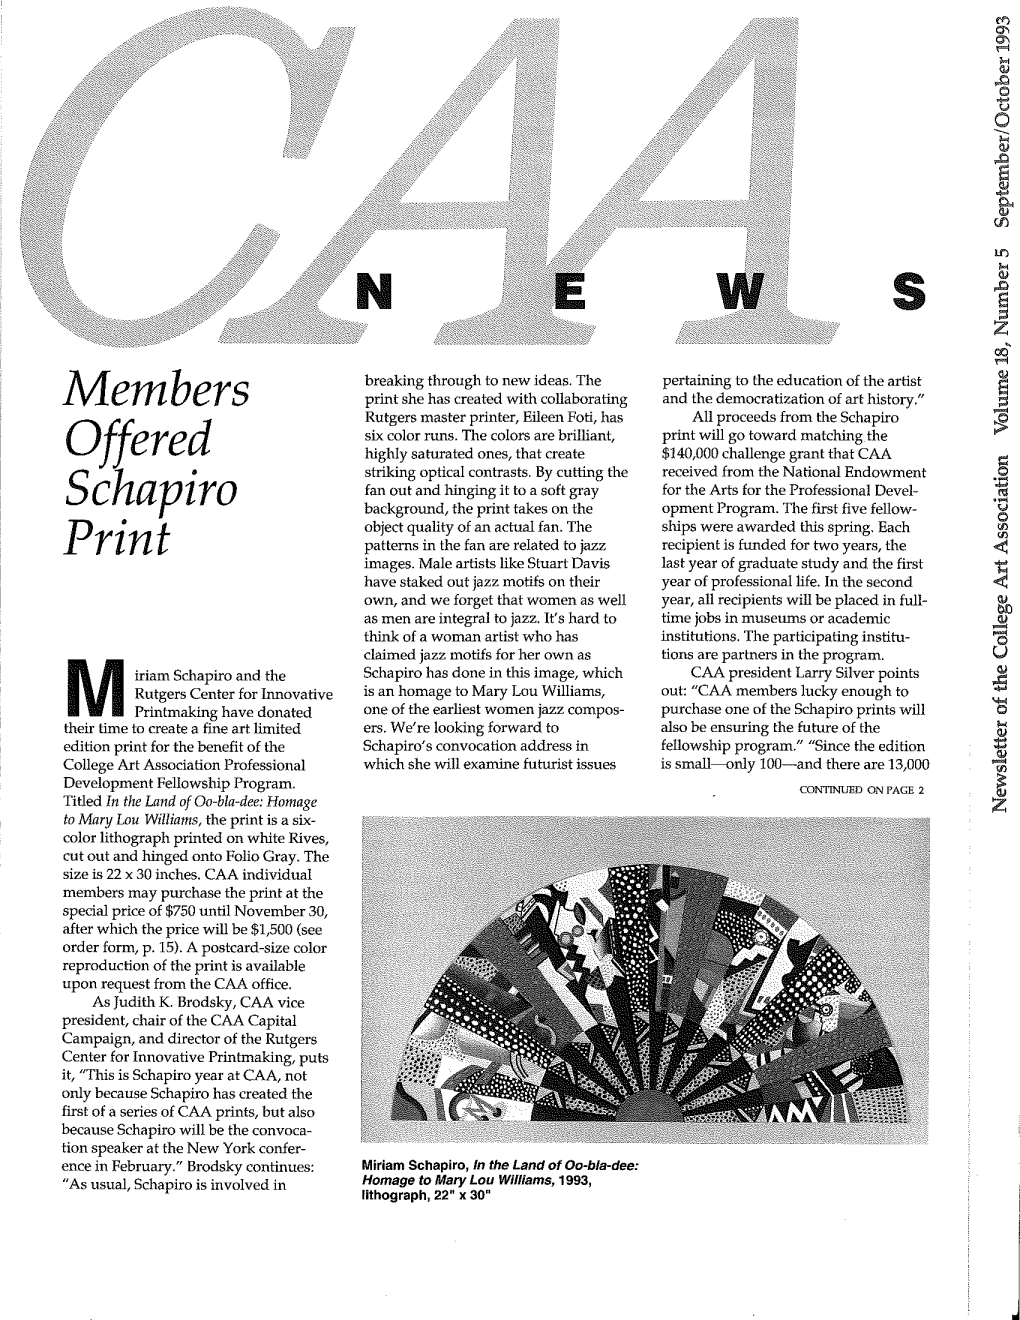 September-October 1993 CAA News